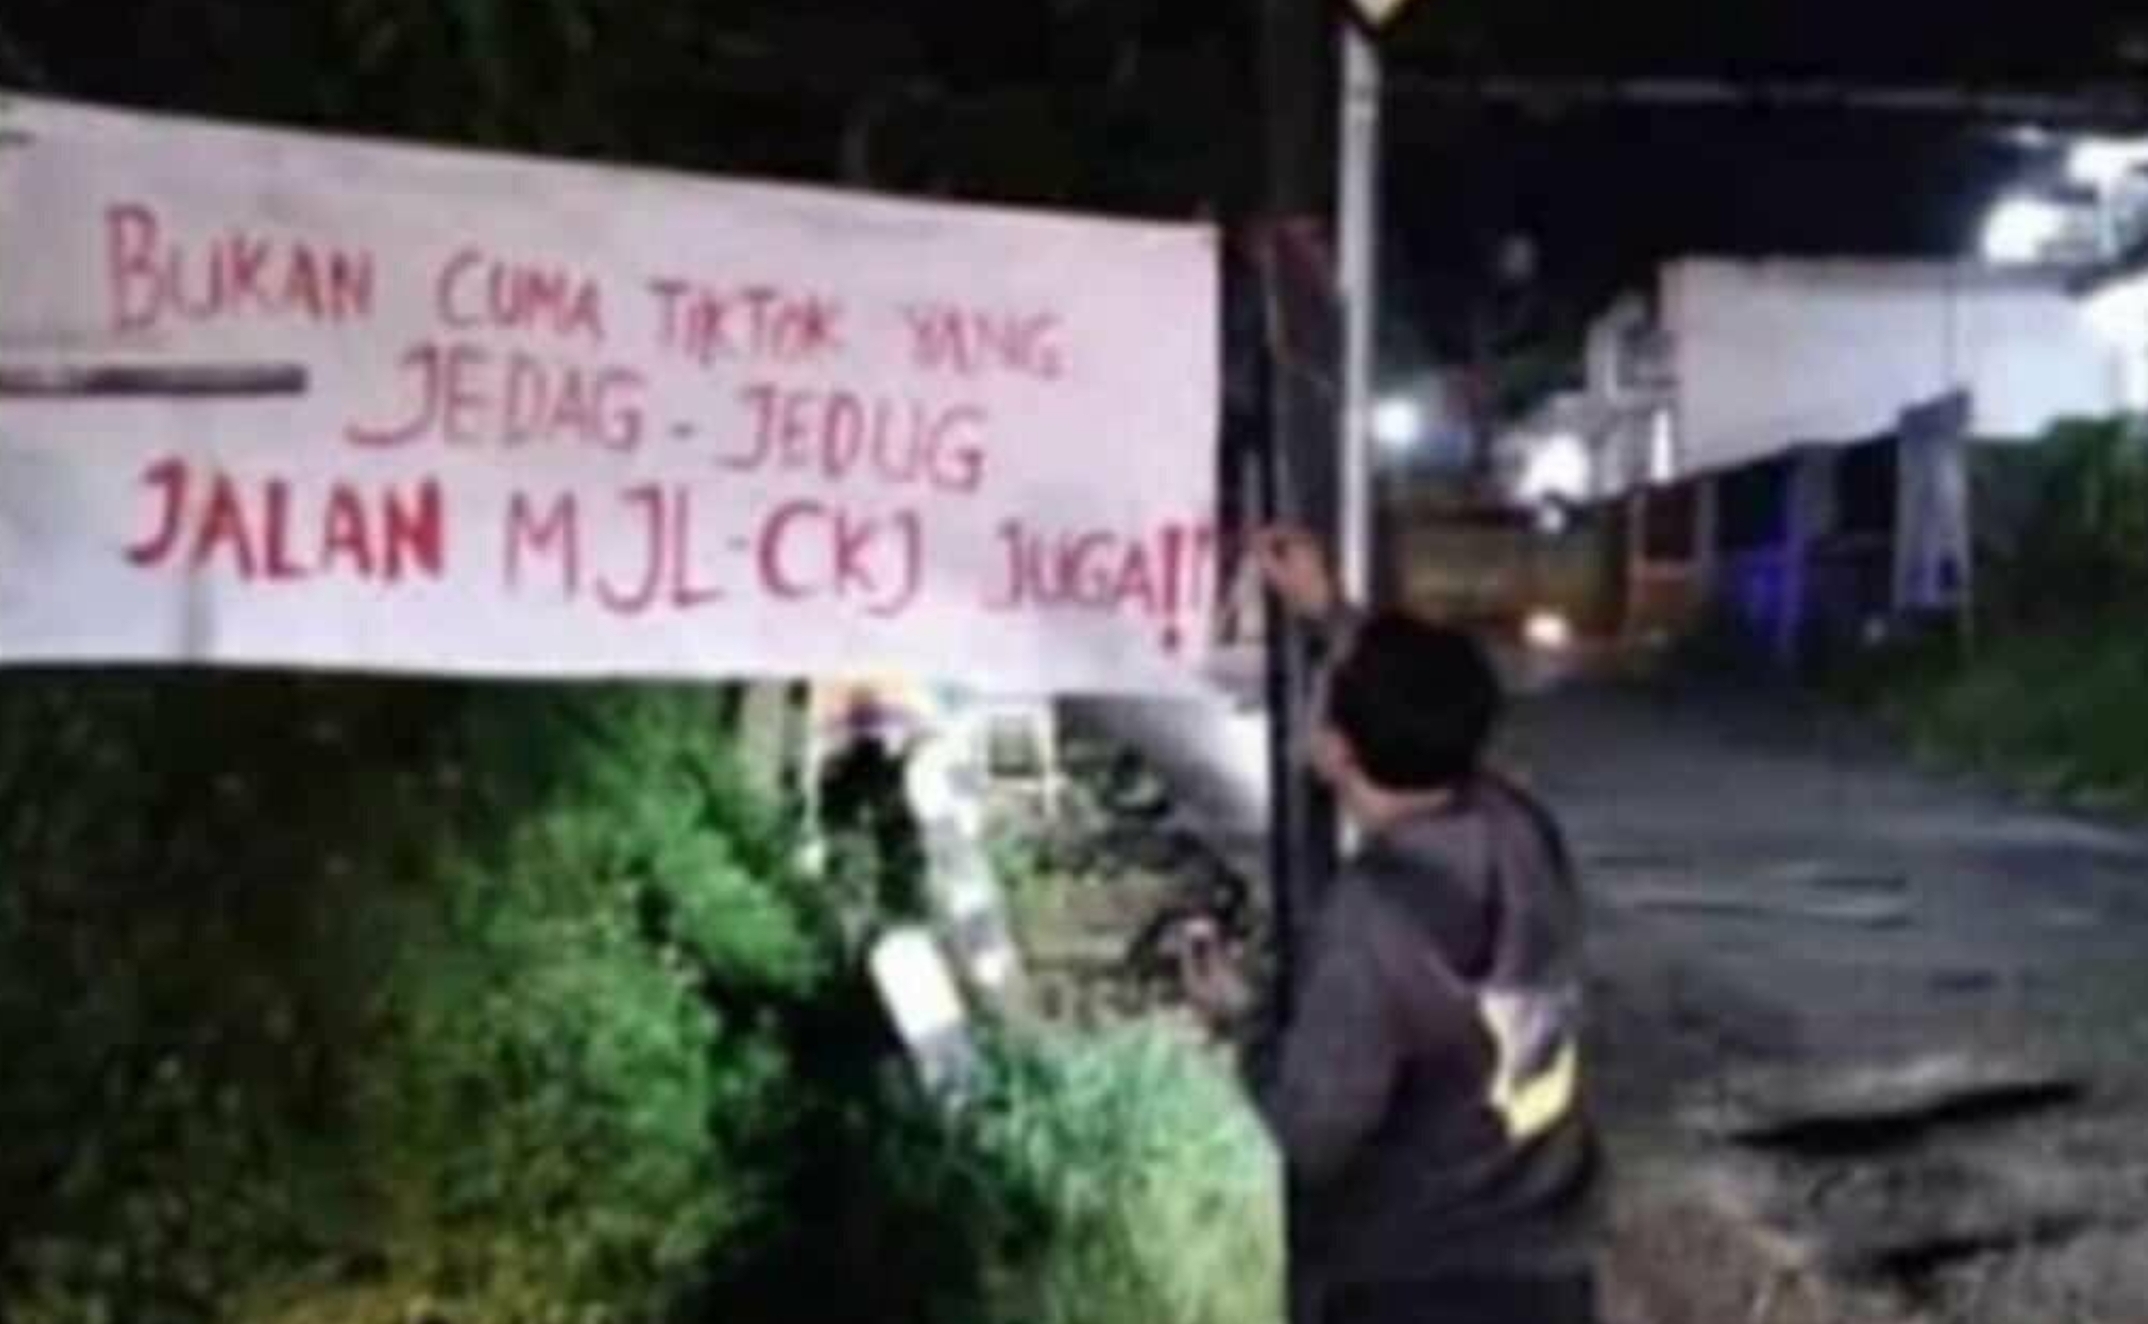 Bukan Hanya TikTok Jedag Jedug Jalan Rusak Jawa Barat Disorot, Ridwan Kamil: Tahun Ini Fokus ke Jalan